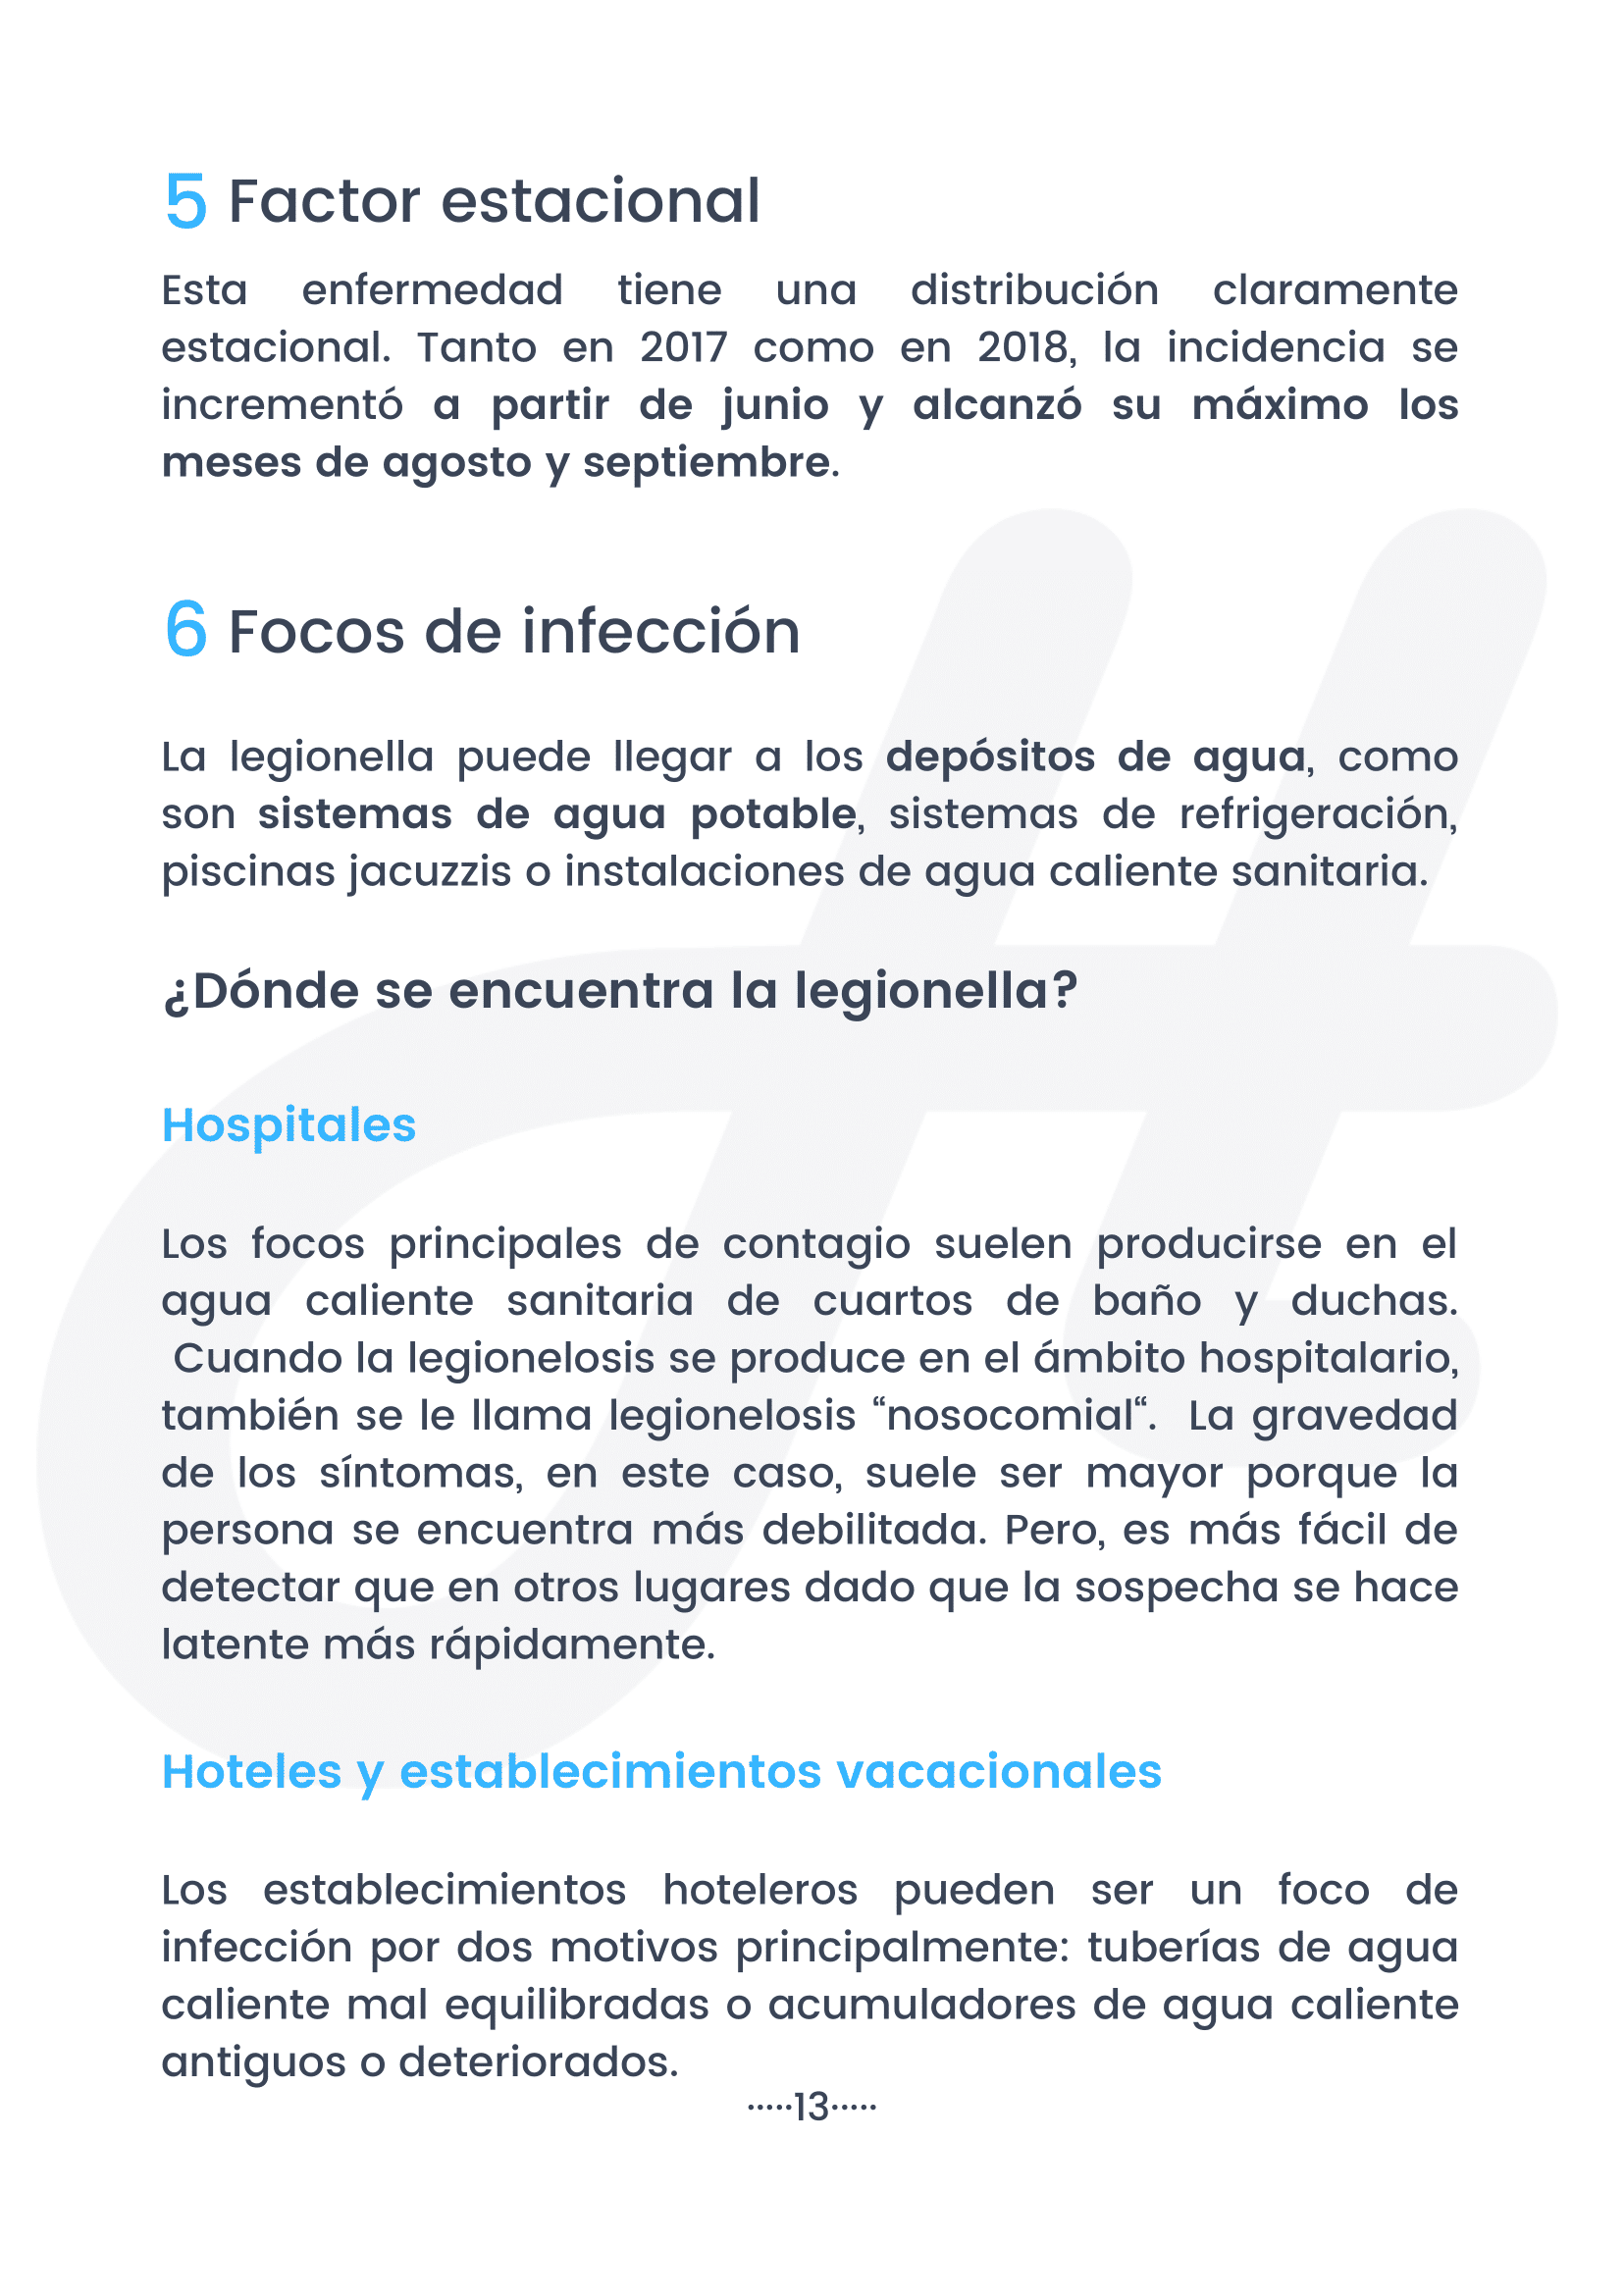 Legionelosis en España (2021) 